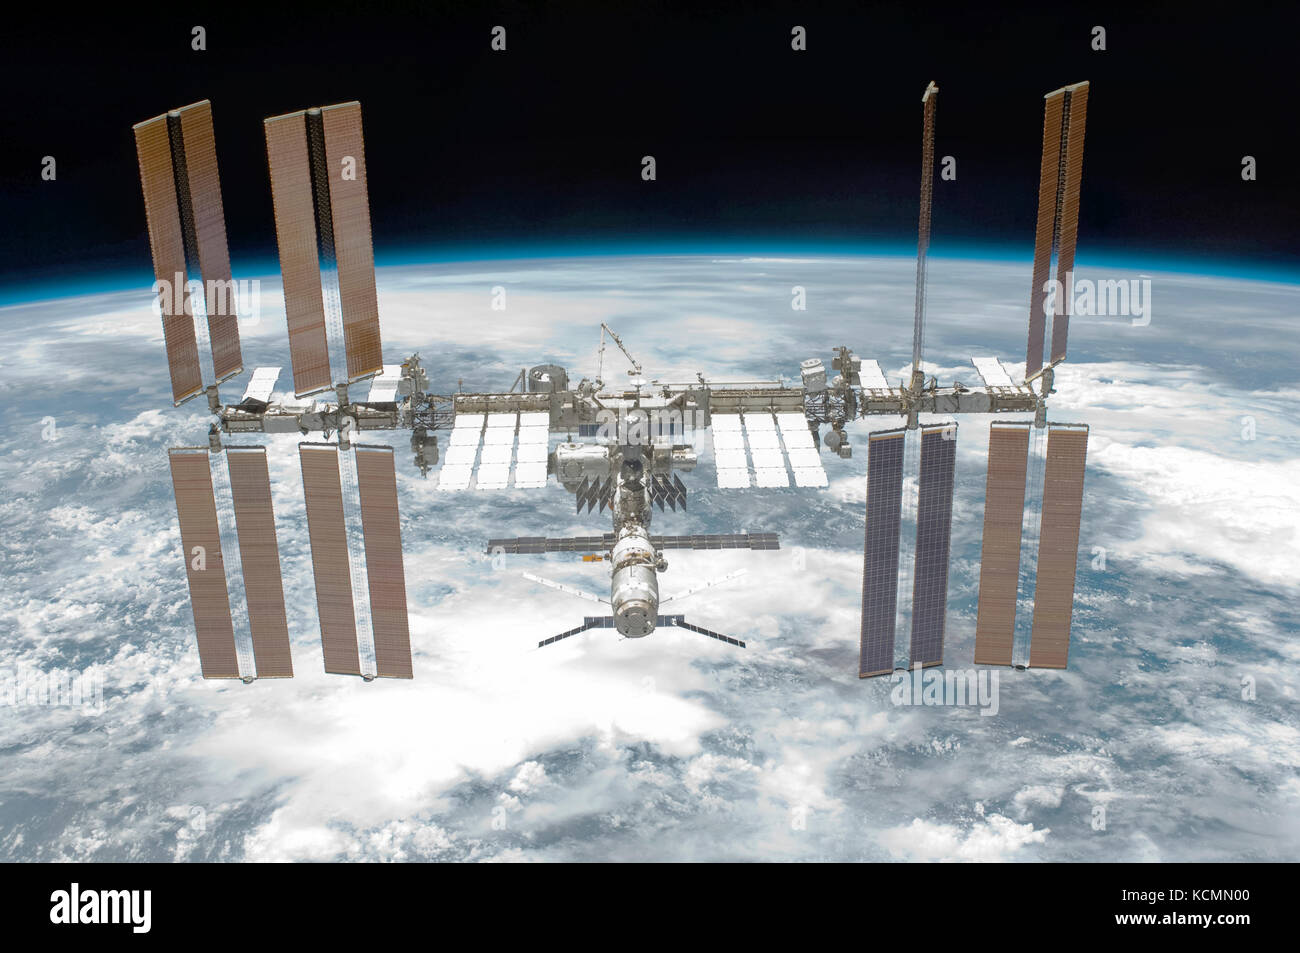 Die Internationale Raumstation (ISS) durch ein Mitglied der Besatzung auf dem Space Shuttle Endeavour (STS-134) am 29. Mai 2011 fotografiert. Credit: Futuras Fotos/NASA. Stockfoto